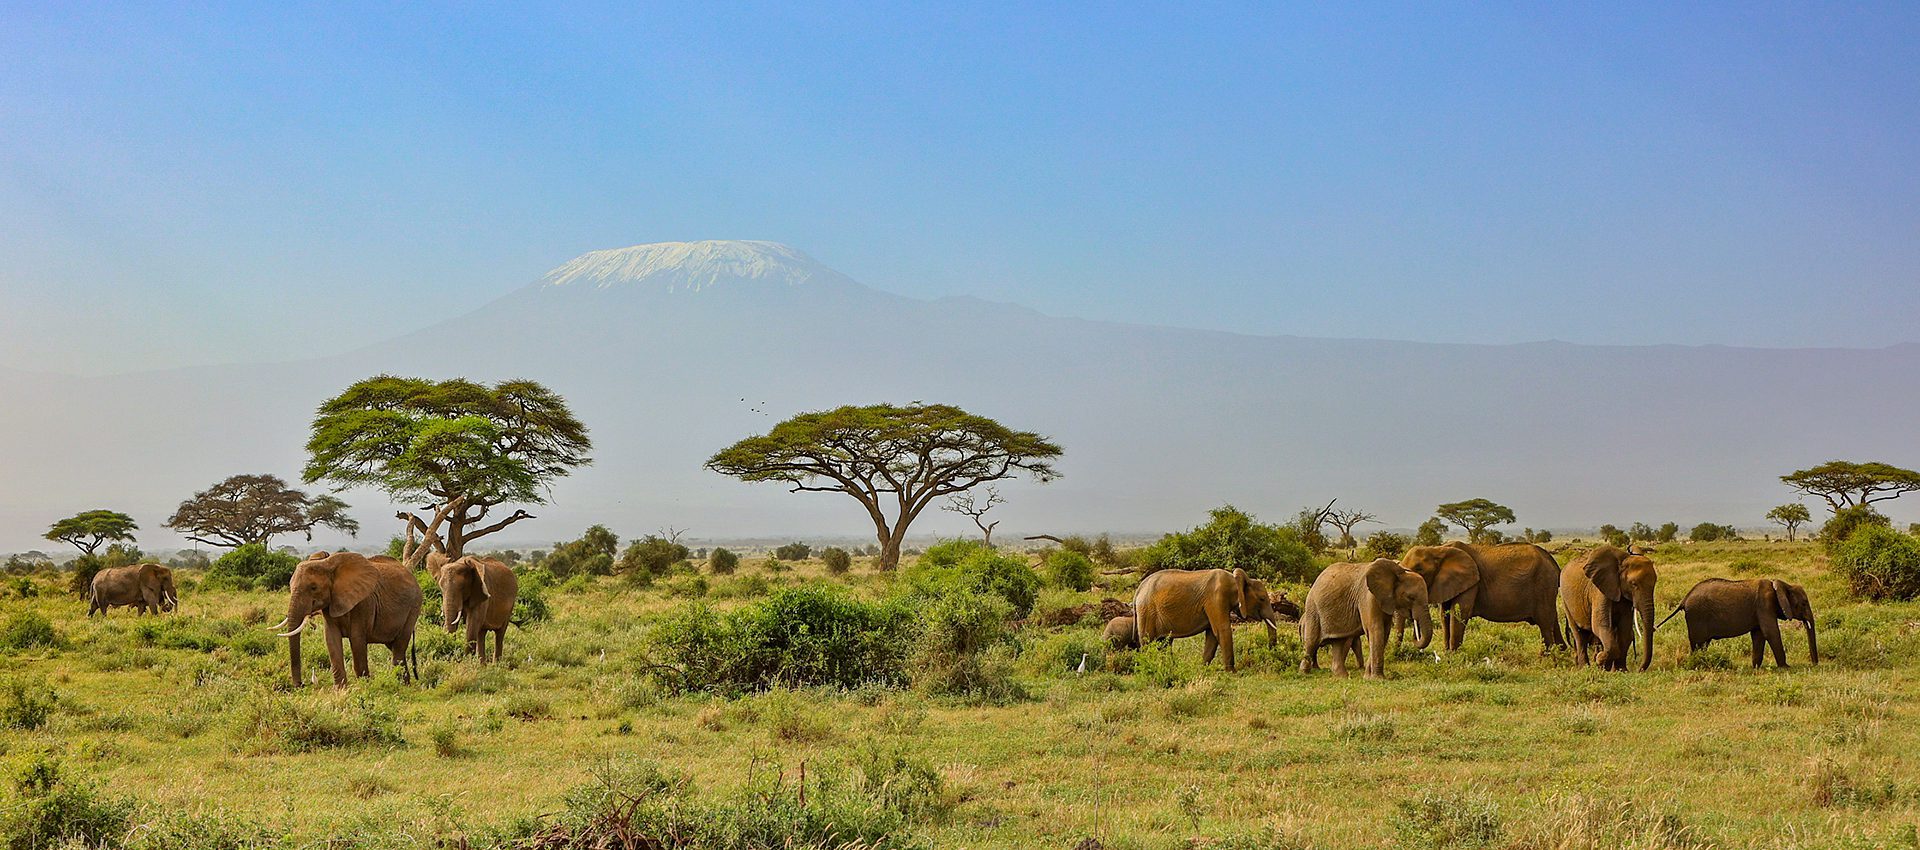 Motorreiskalender Kenia-Tanzania 2024 Kilimanjaro 3˚03 South, Avontuurlijke motorreizen in Afrika.